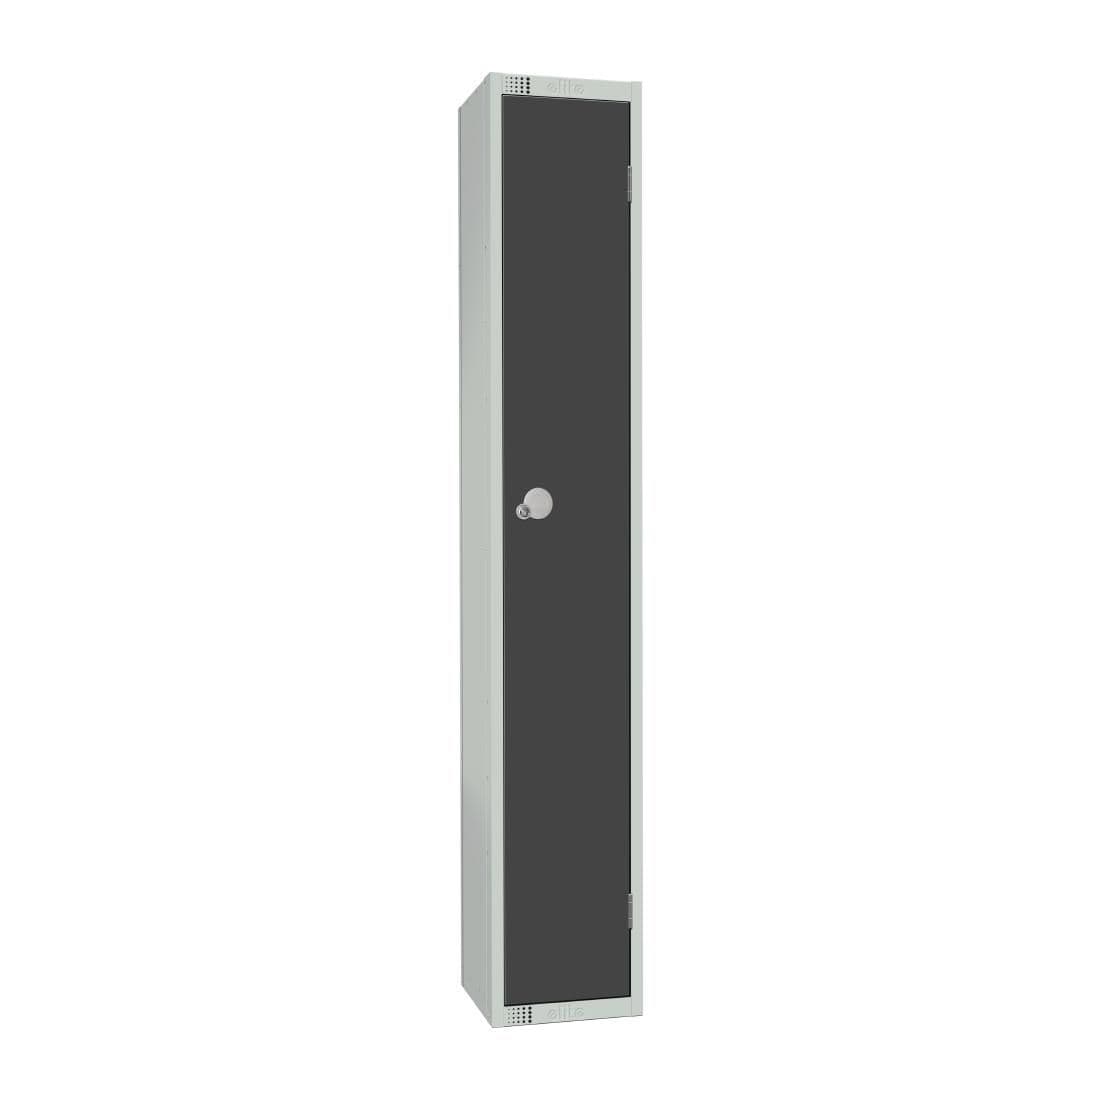 GR677-C Elite Single Door Camlock Locker Graphite Grey JD Catering Equipment Solutions Ltd